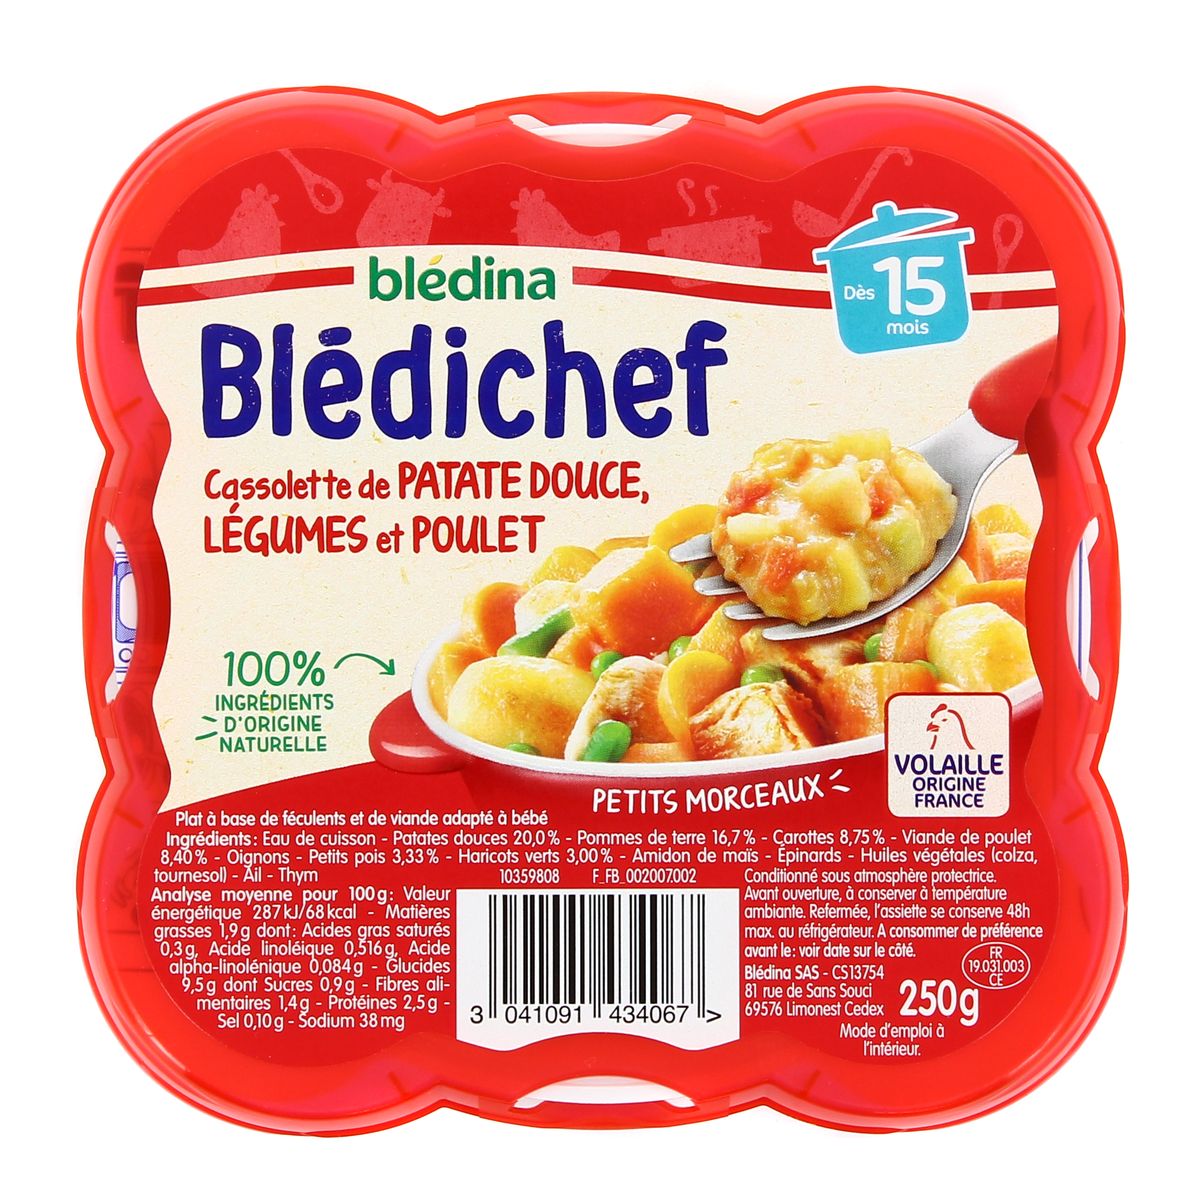 Achat Bledichef Cassolette De Patate Douce Legumes Et Poule Des 15 Mois